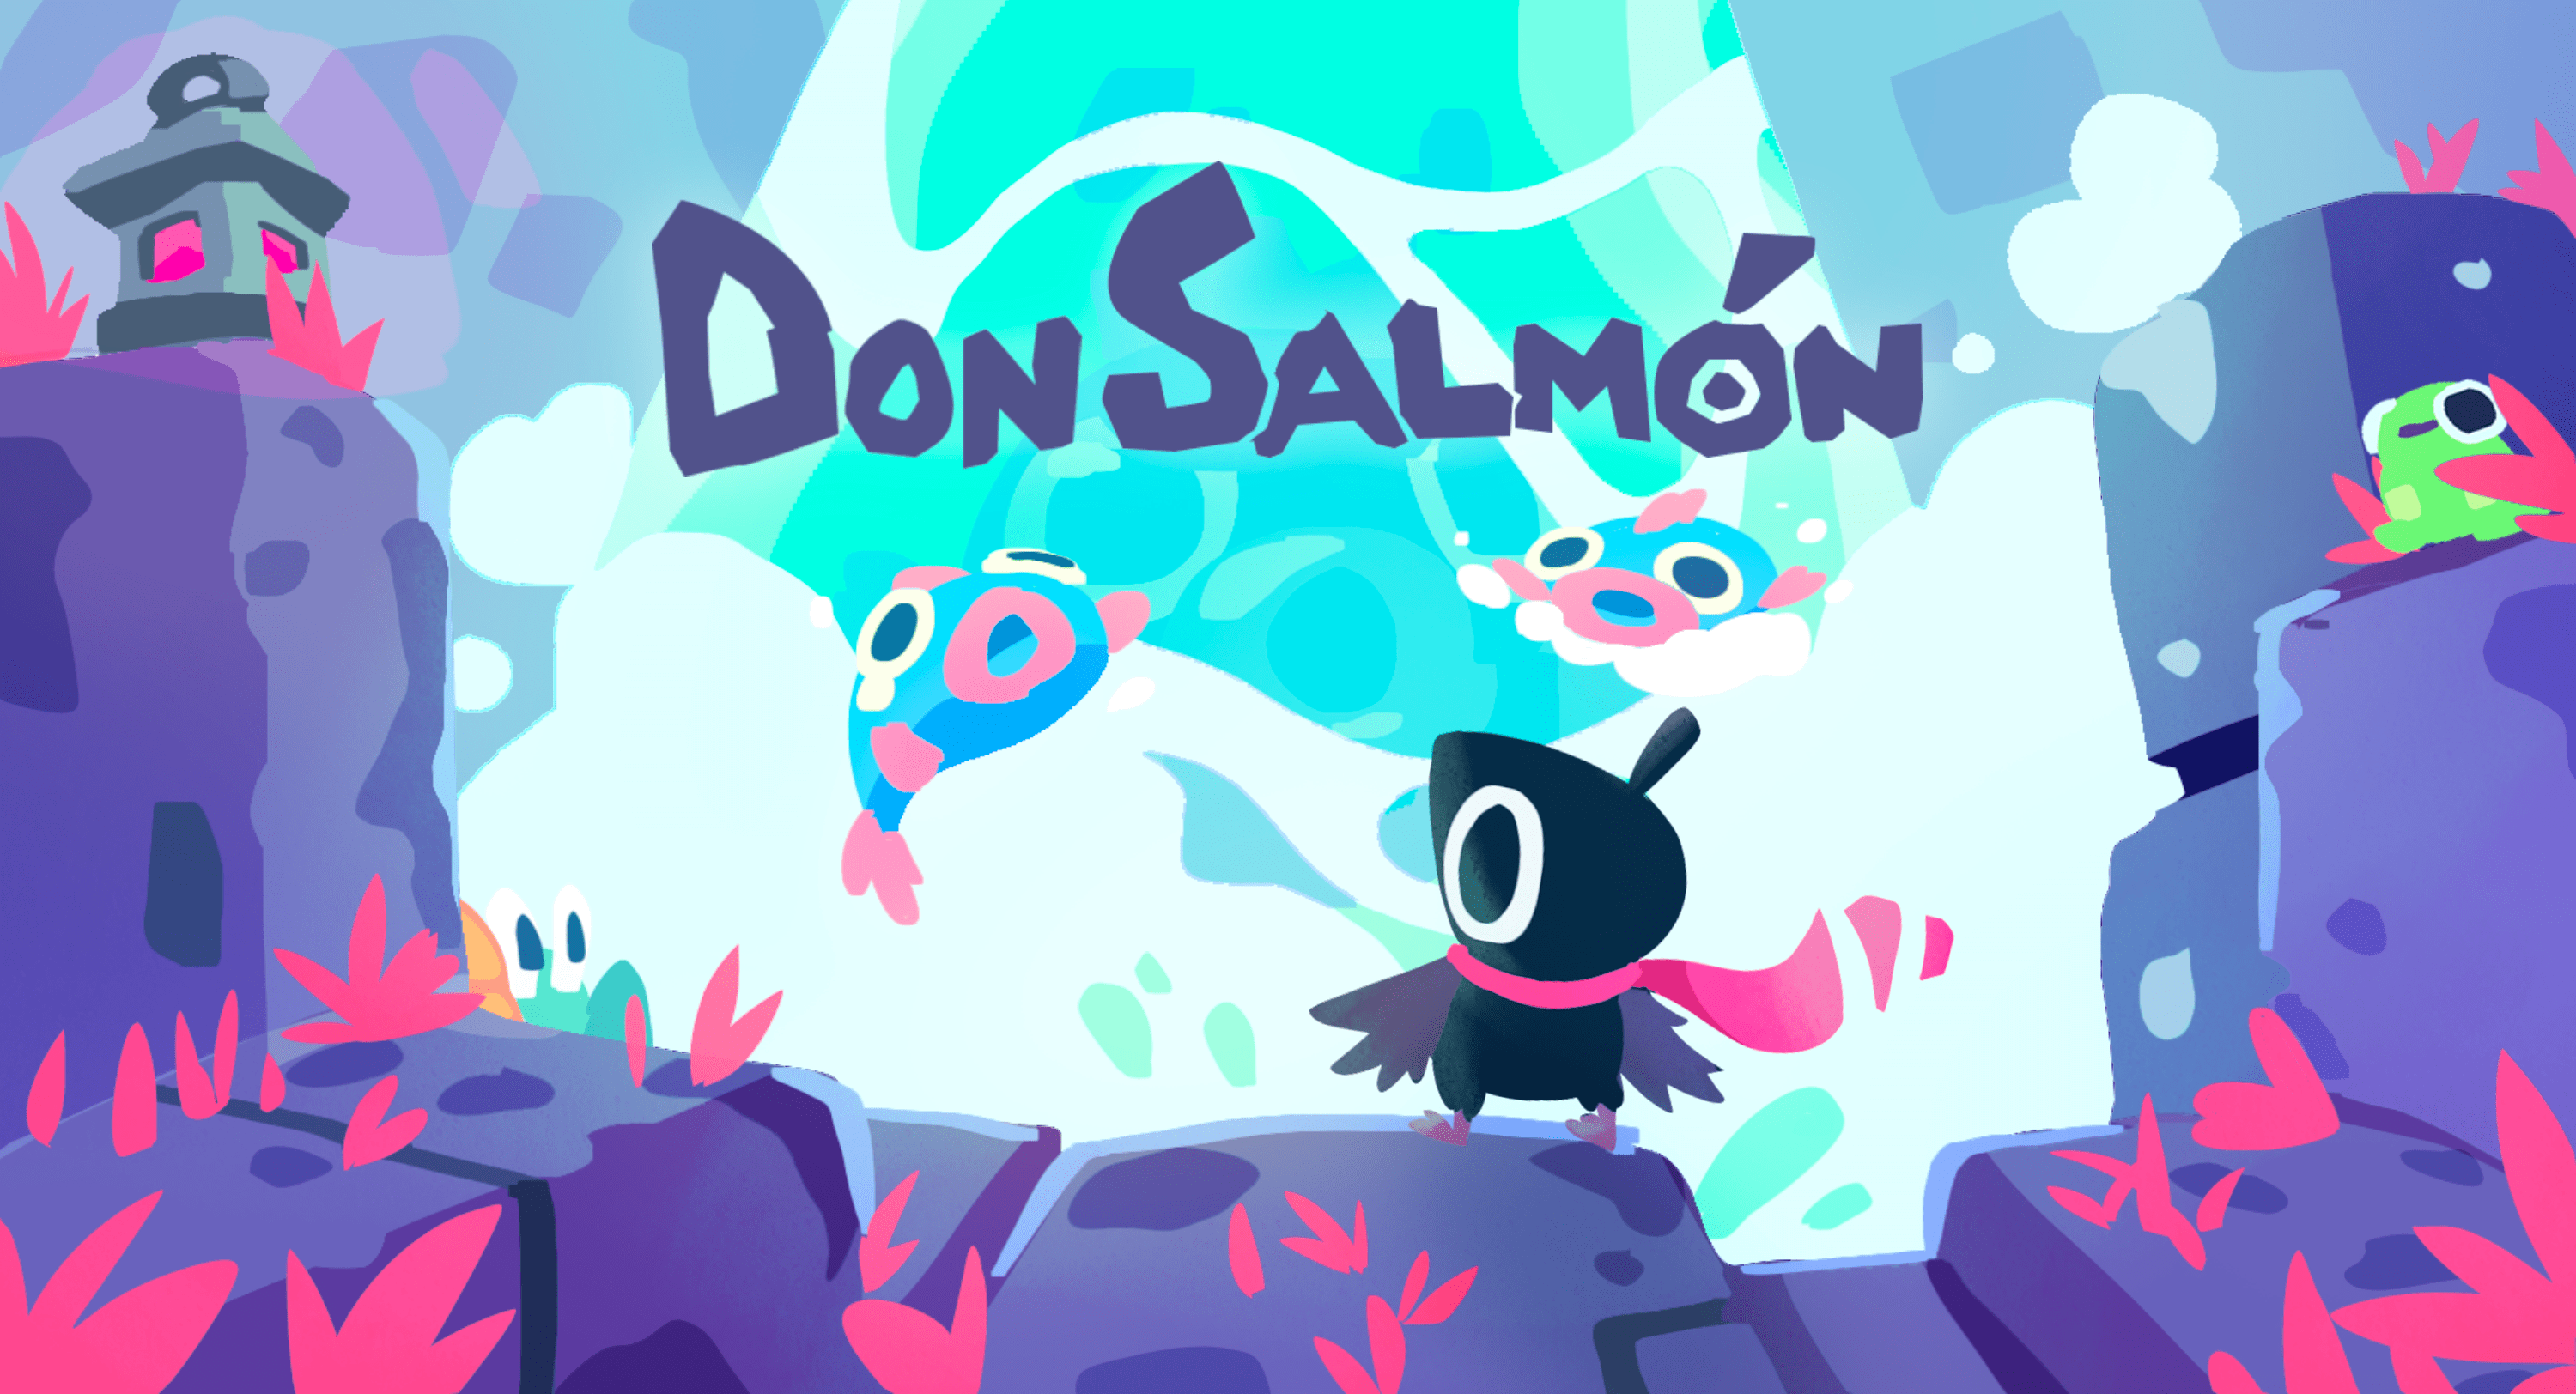 Don Salmon